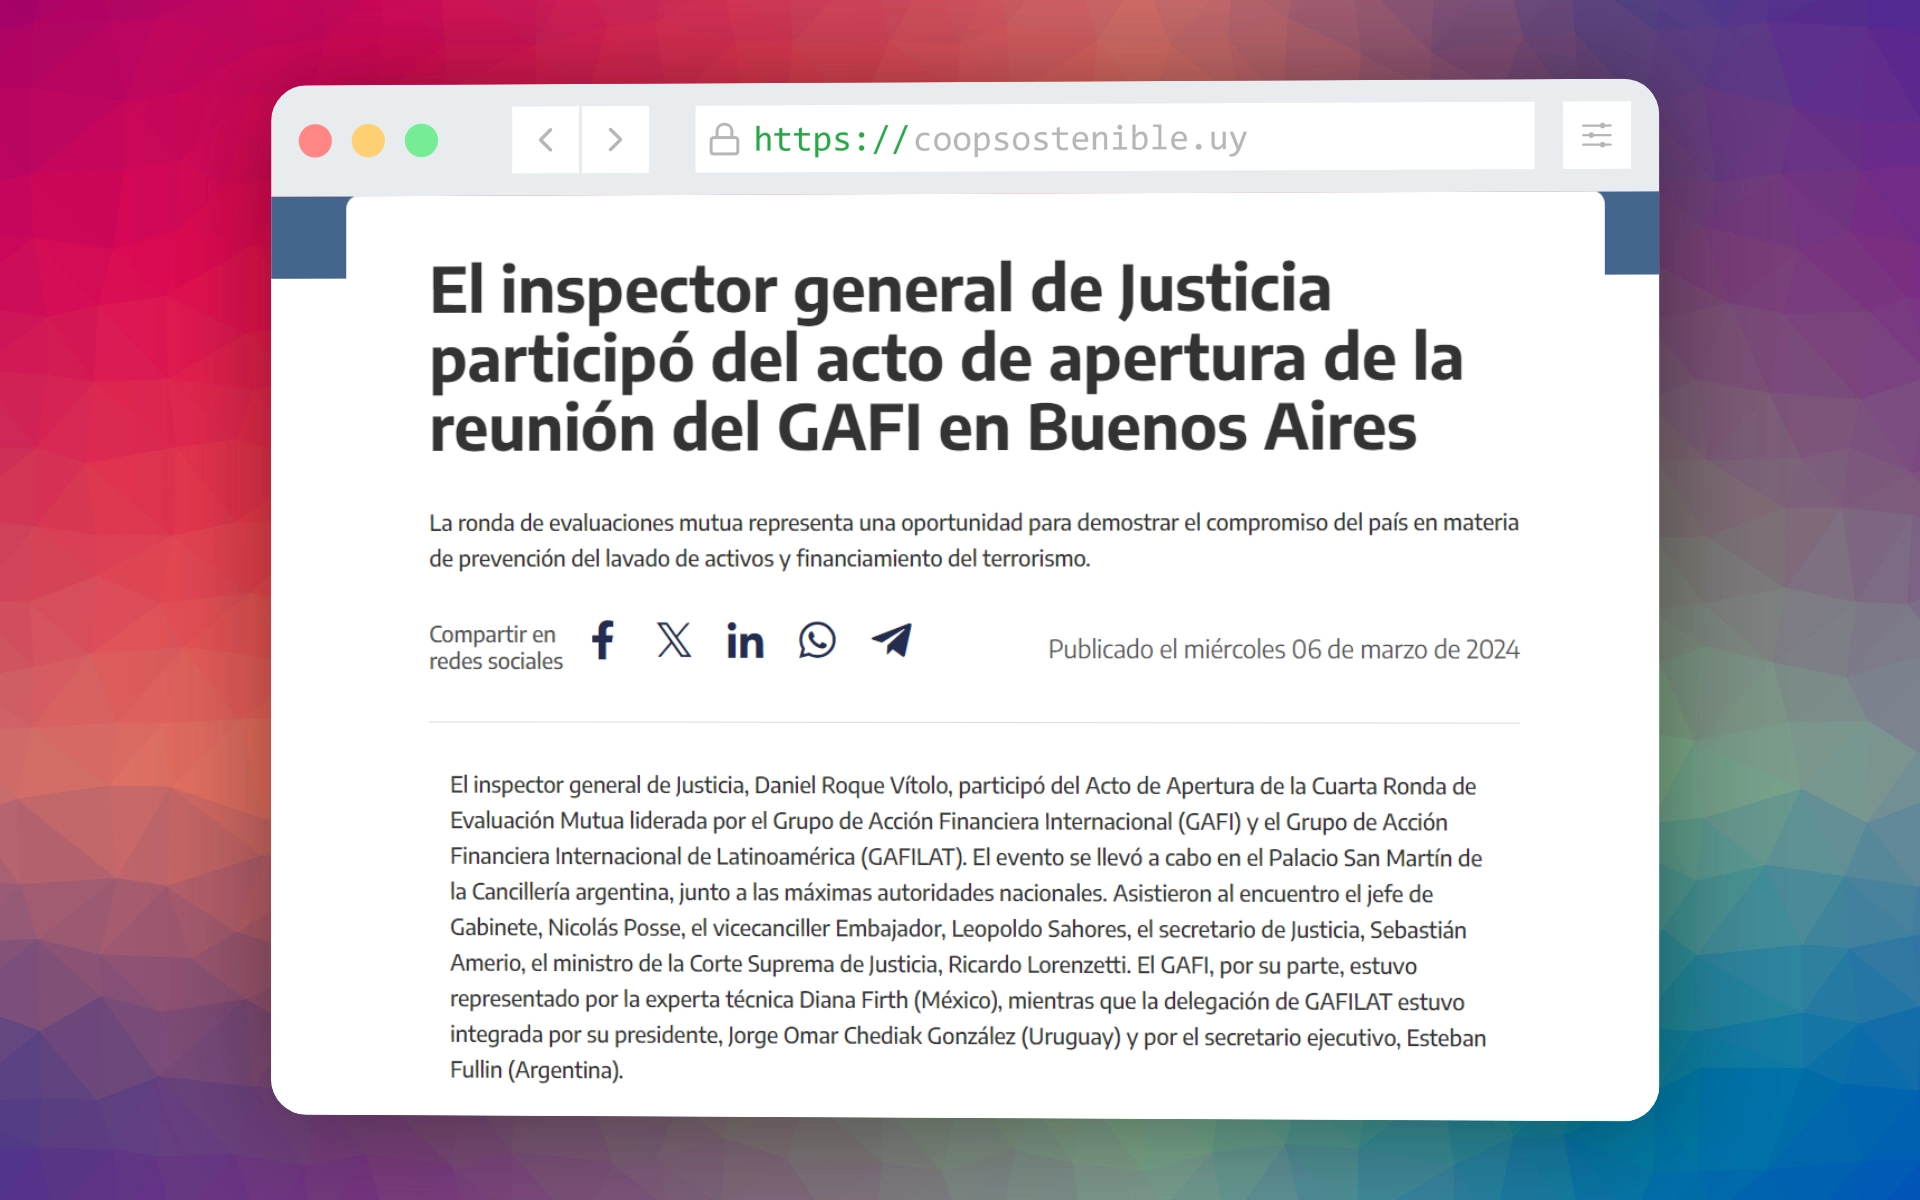 El inspector general de Justicia participó del acto de apertura de la reunión del GAFI en Buenos Aires.